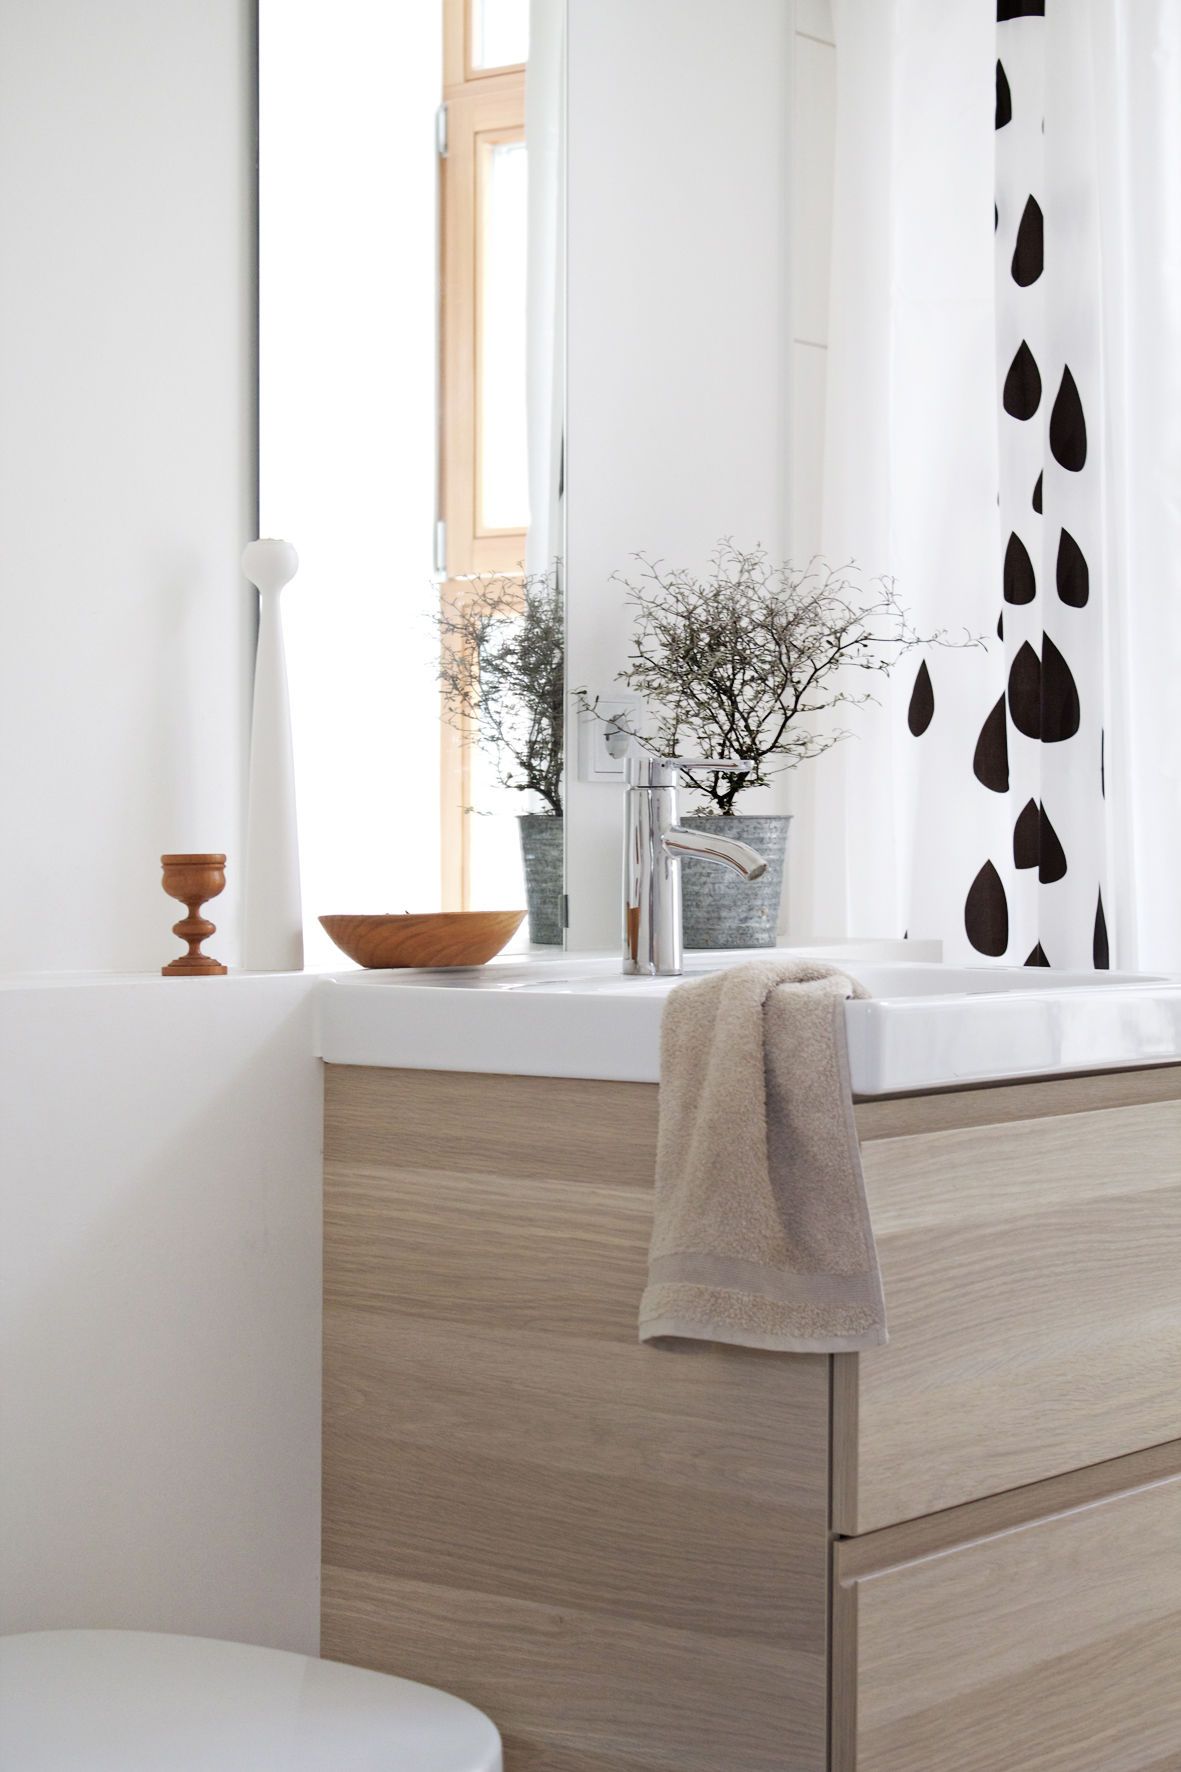 Badezimmer Deko: Die schönsten Ideen